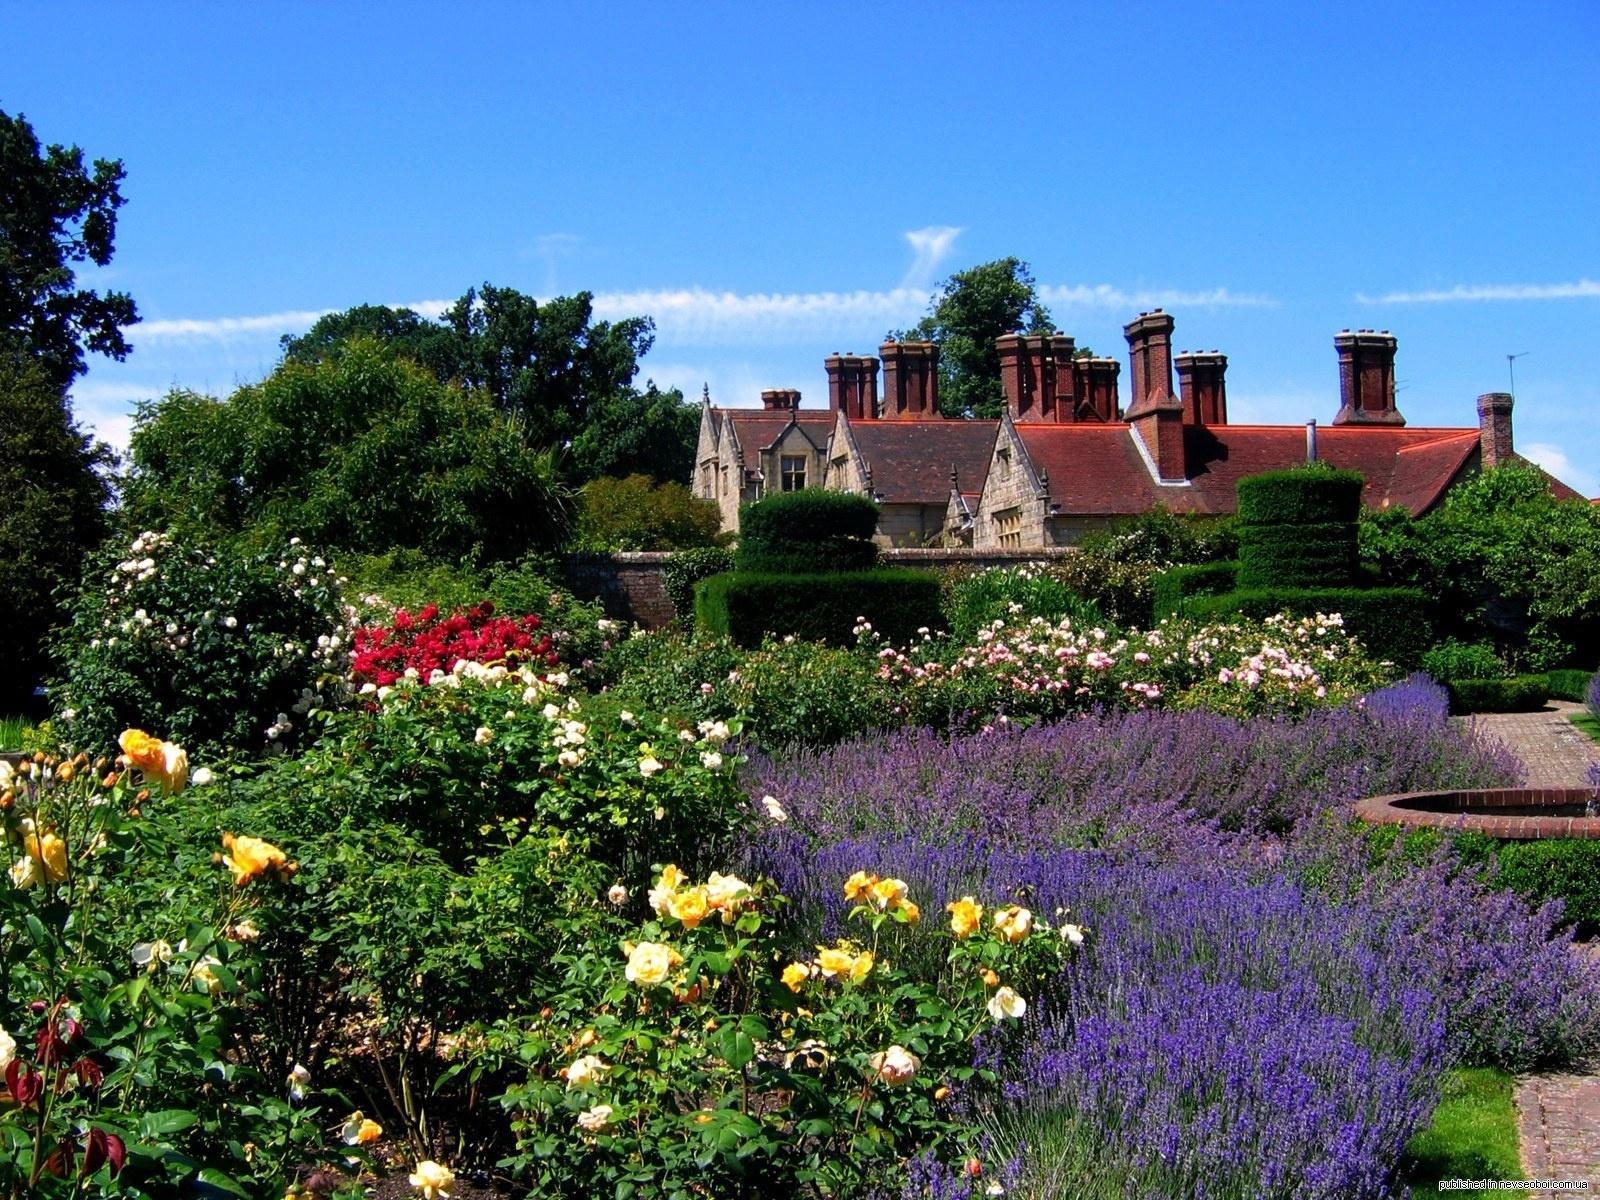 English Landscape Desktop Background. Gardening: Flower and Vegetables